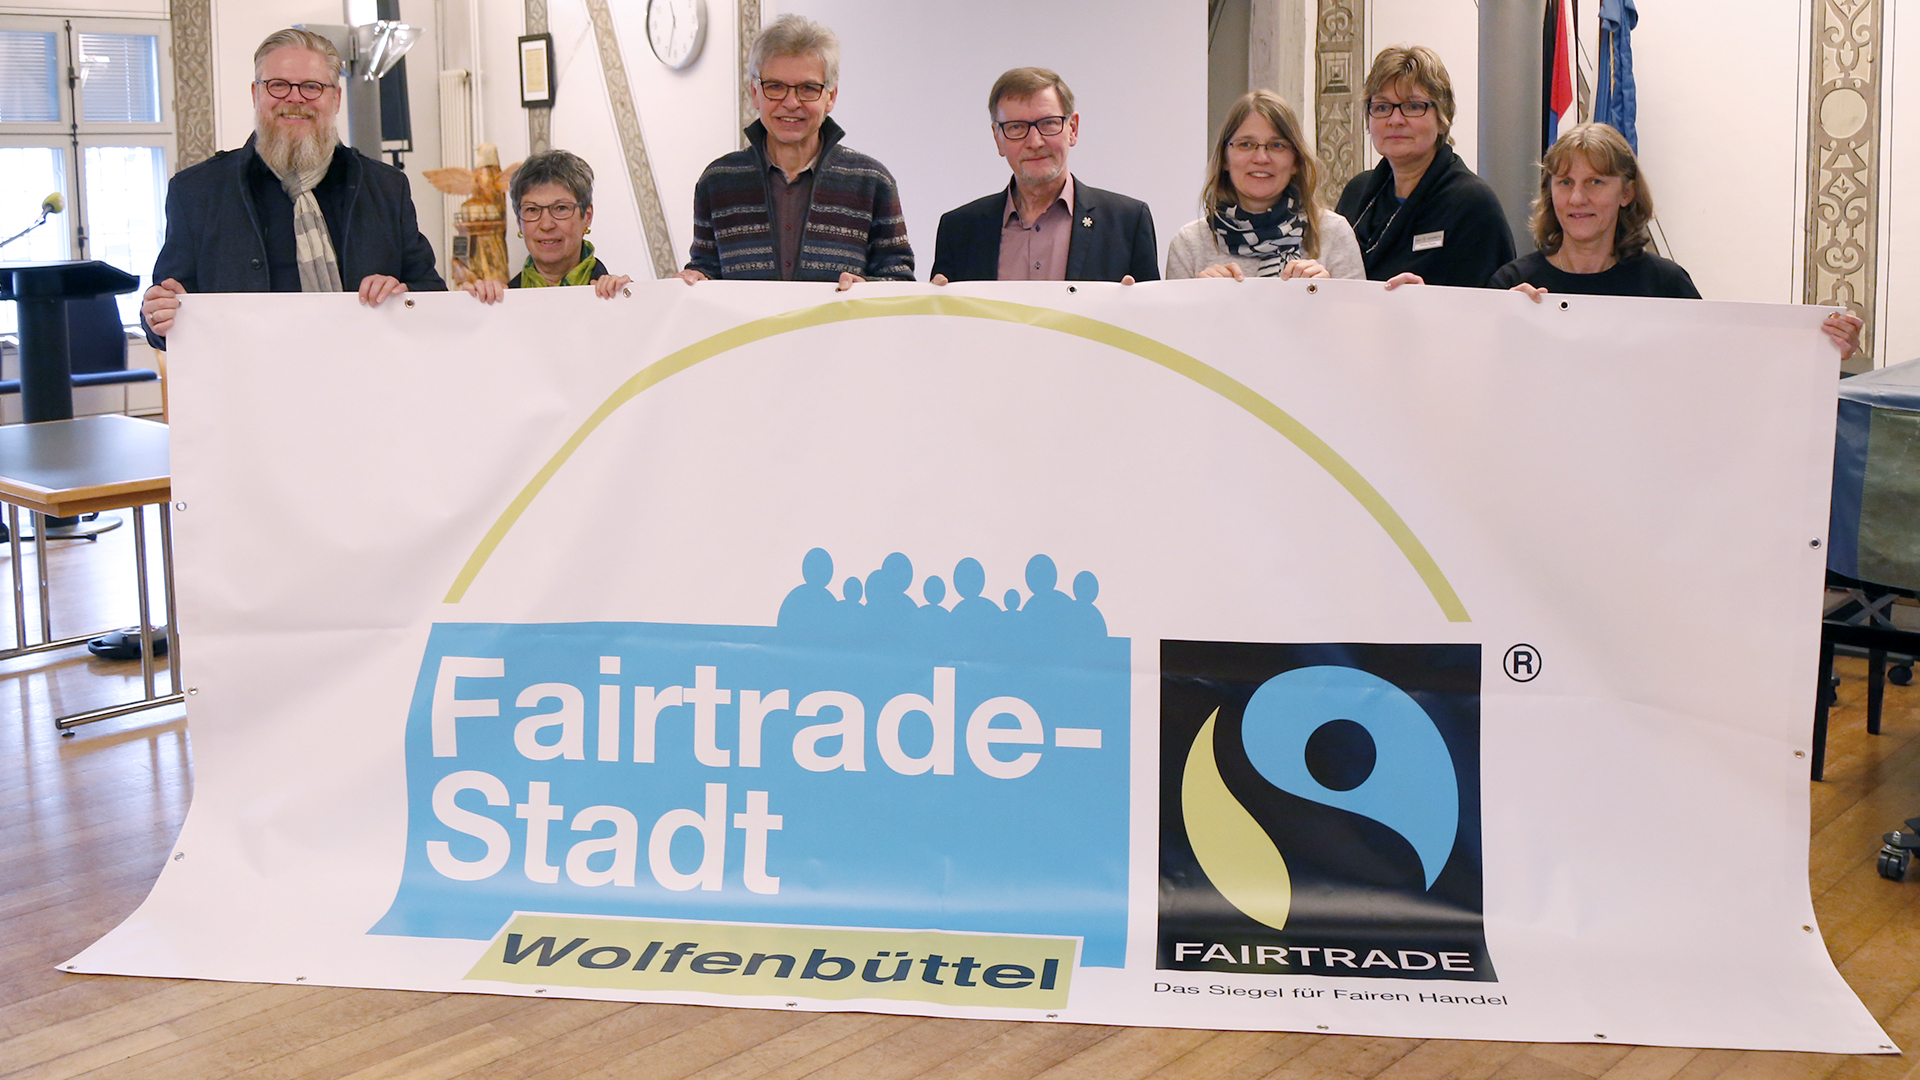 Gruppenfoto von drei Männern und vier Frauen, die auf Banner mit dem Aufdruck "Fairtrade-Stadt Wolfenbüttel" halten.